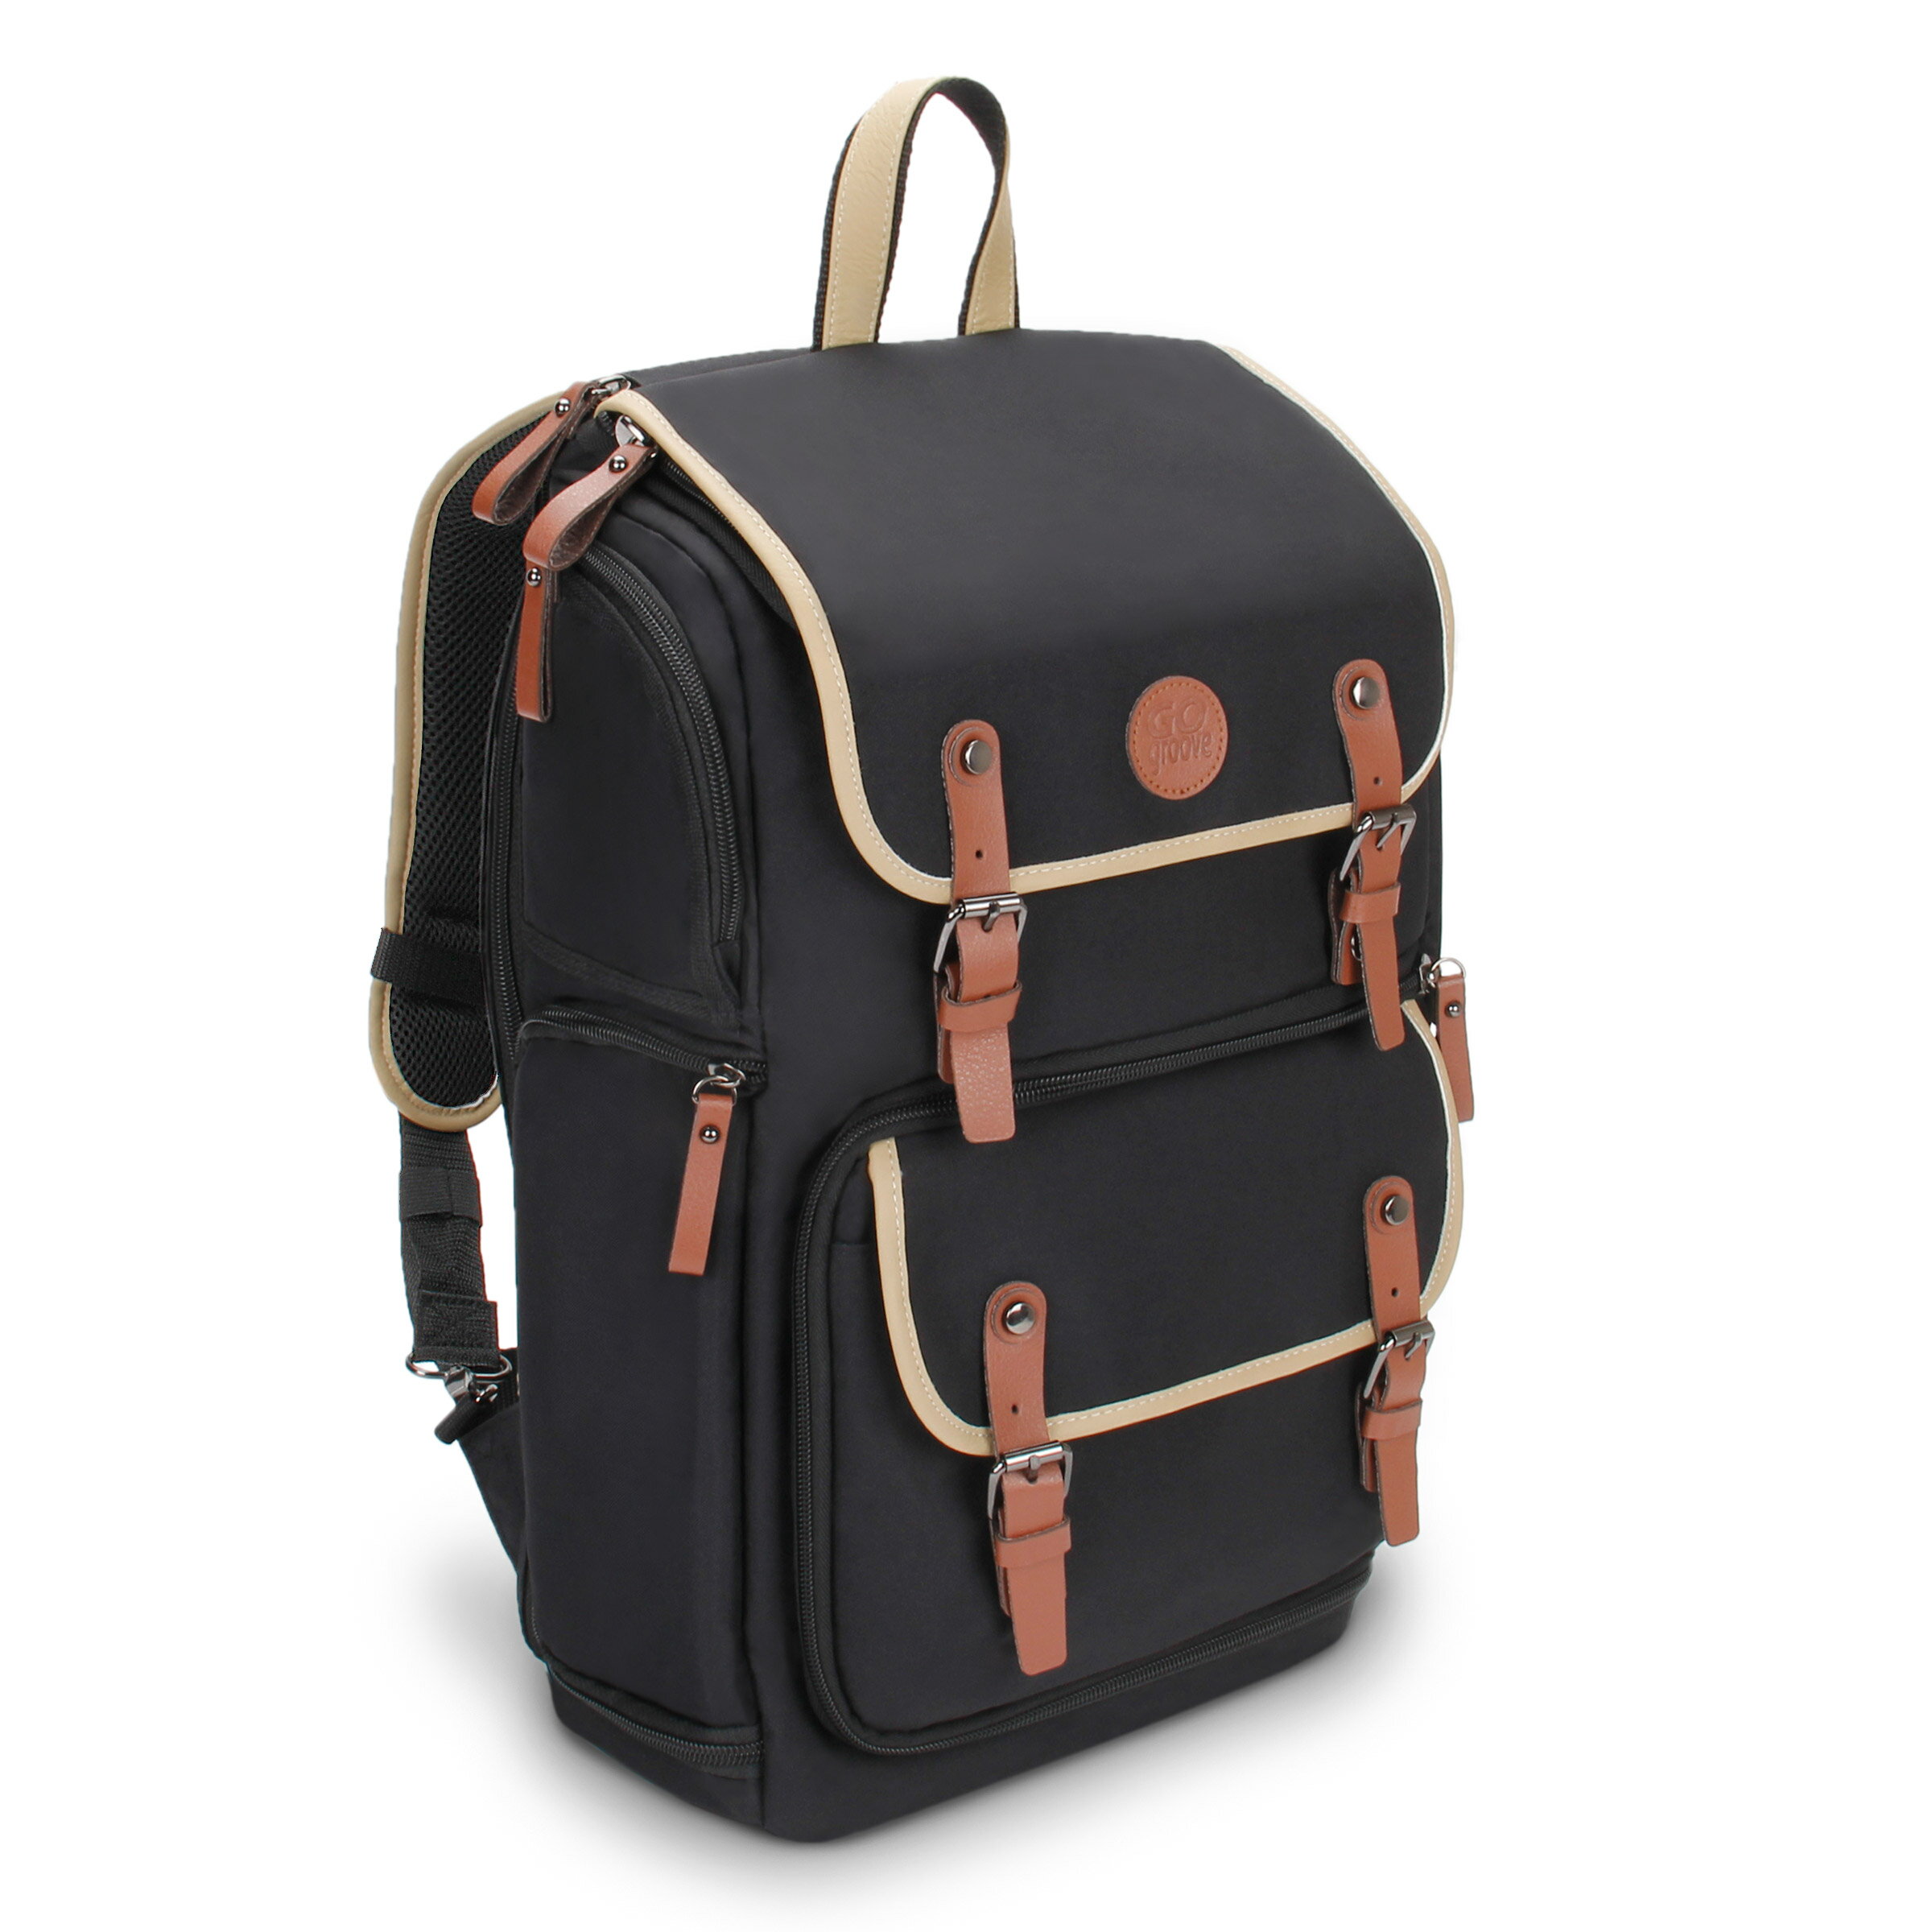 Backpack Travel Laptop Backpack Color : Khaki Shoulder Photography Backpack SLR Digital Bag Tarpaulin Mens Backpack Camera Bag for Outdoor Scratch-Resistant